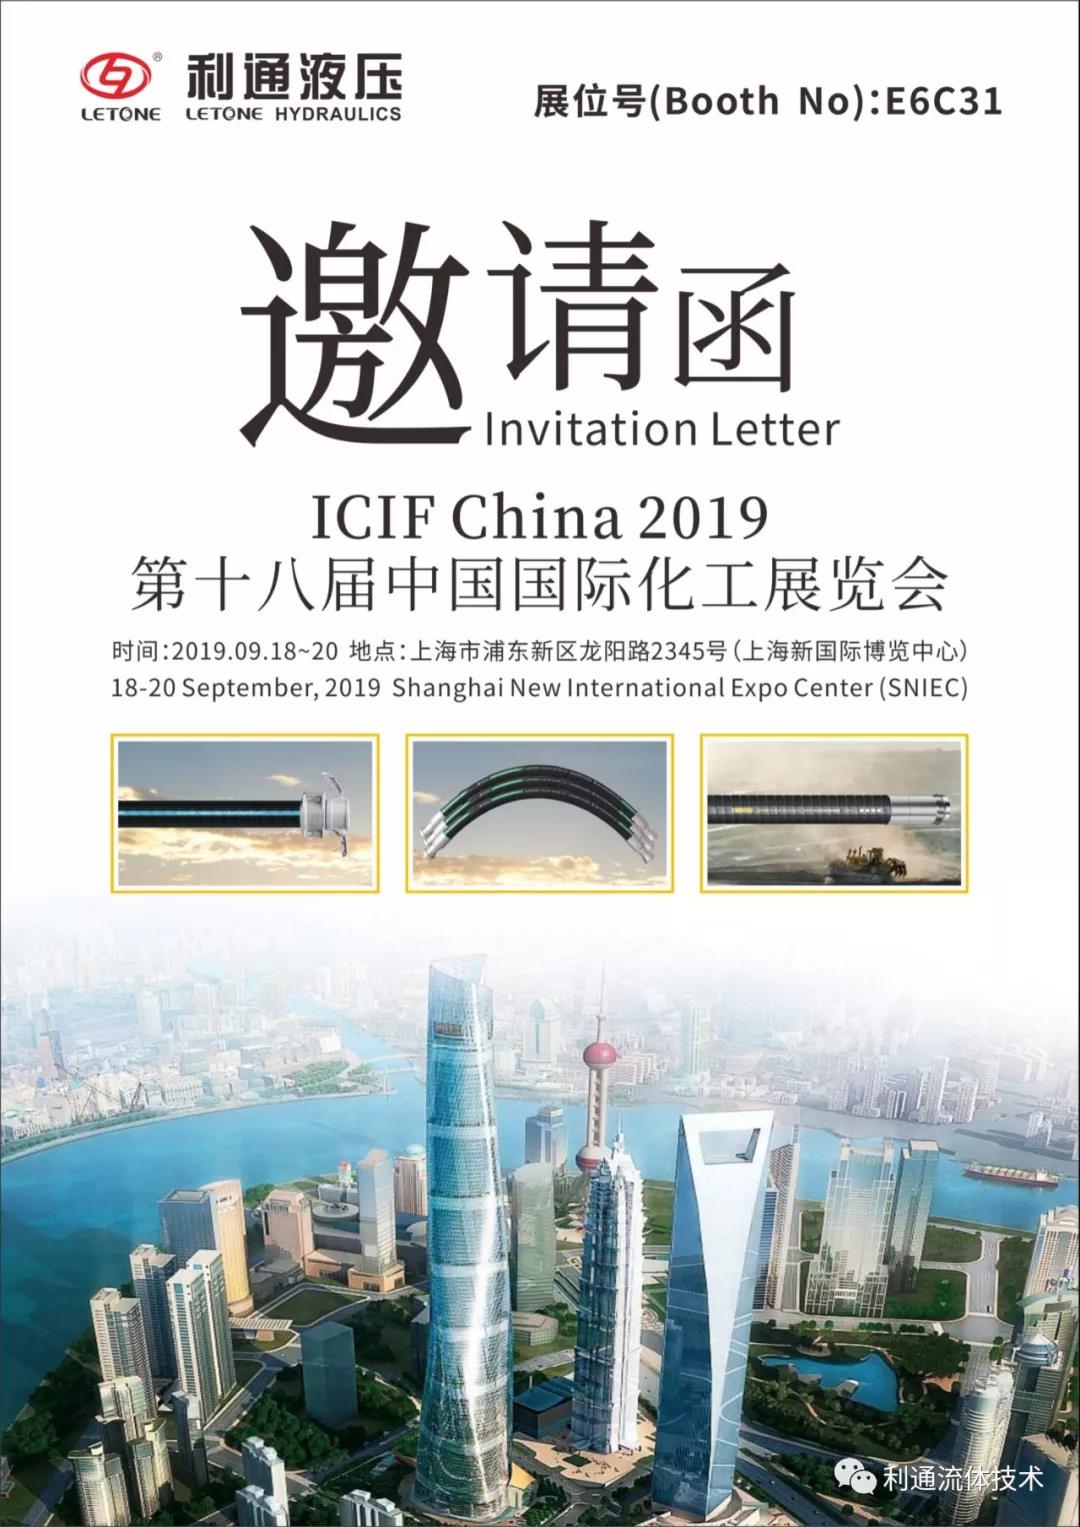 9月18日-20日上海新国际博览中心E6C31邀您参加中国国际化工展